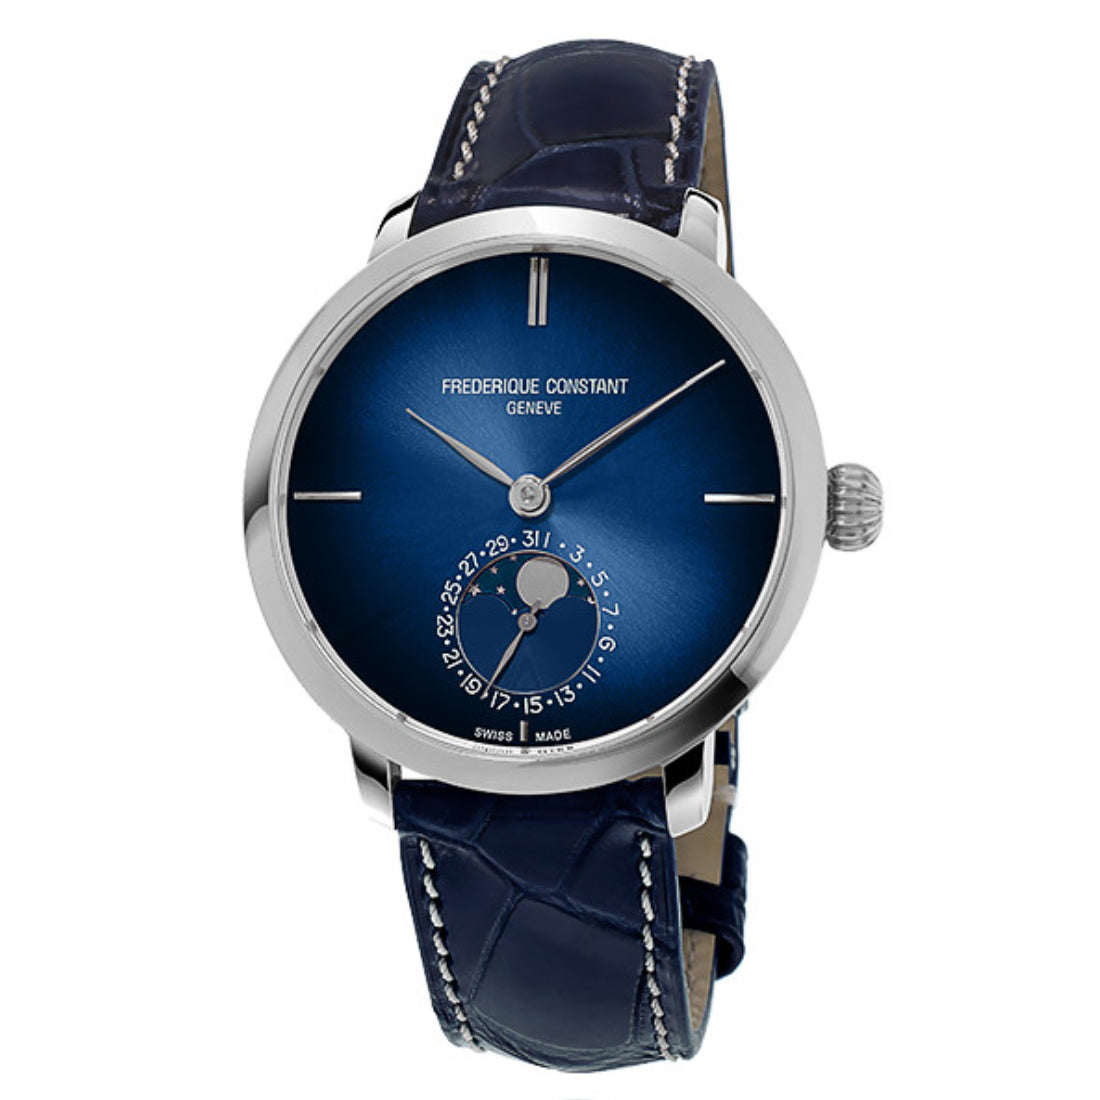 Frederique Constant Men's Automatic Movement Blue Dial Watch - FC-0183